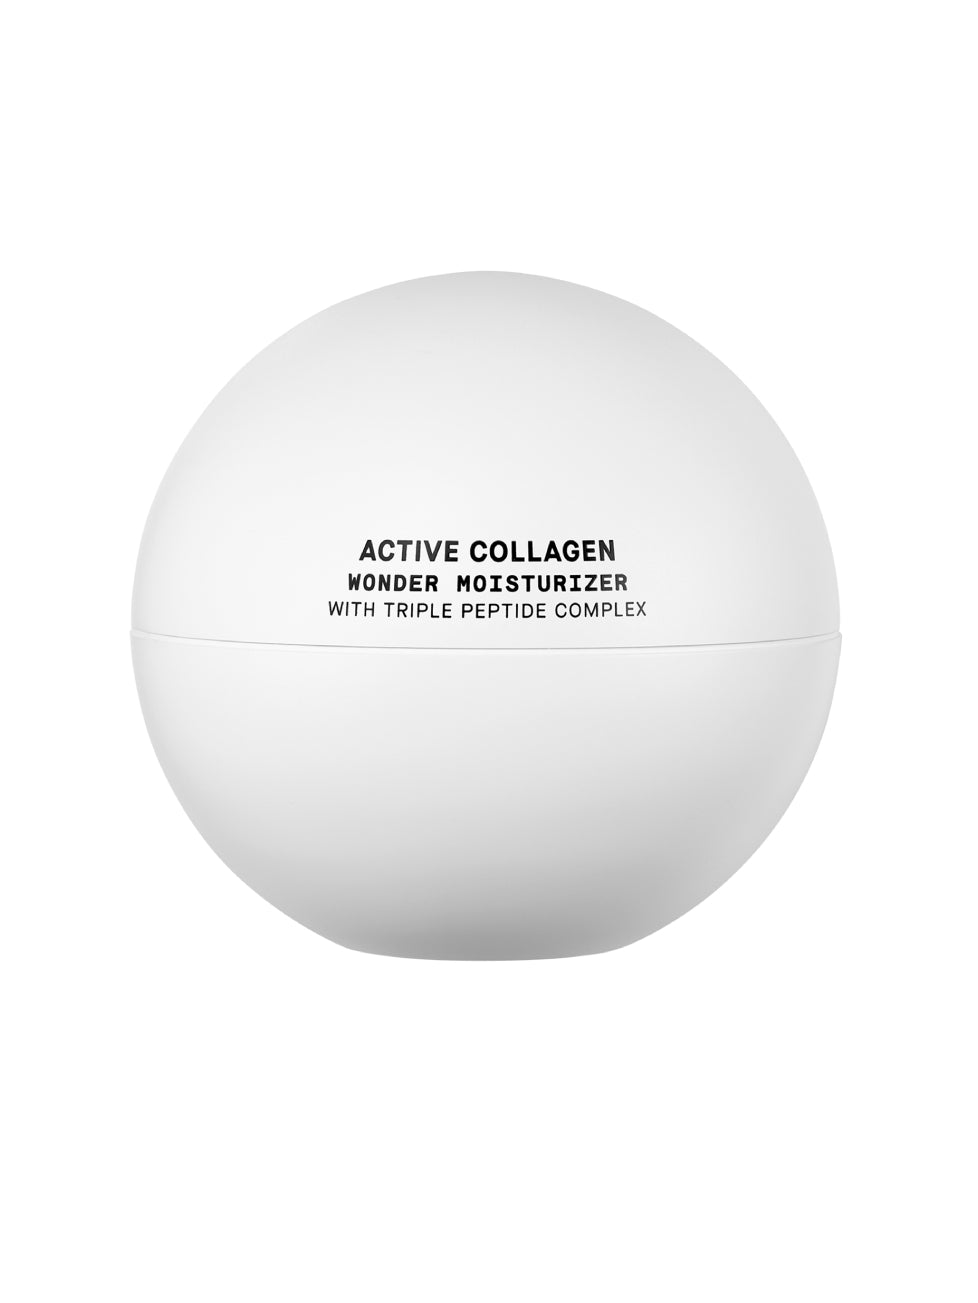 Active Collagen Wonder Moisturizer packaging